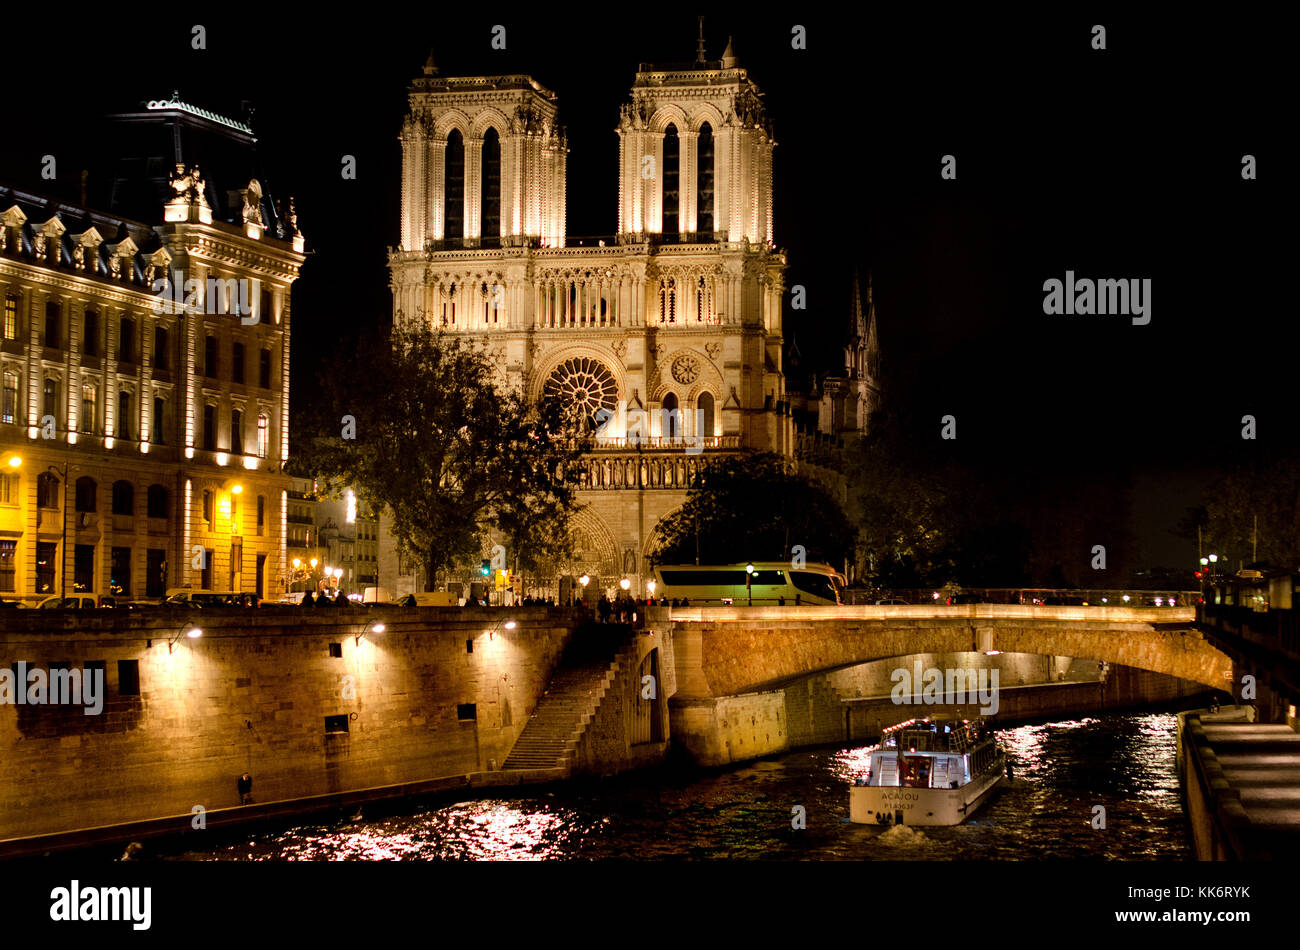 Paris, France. Notre Dame cathedral / Notre-Dame de Paris on Isle de la Cite. Gothic. Lit up at night Stock Photo